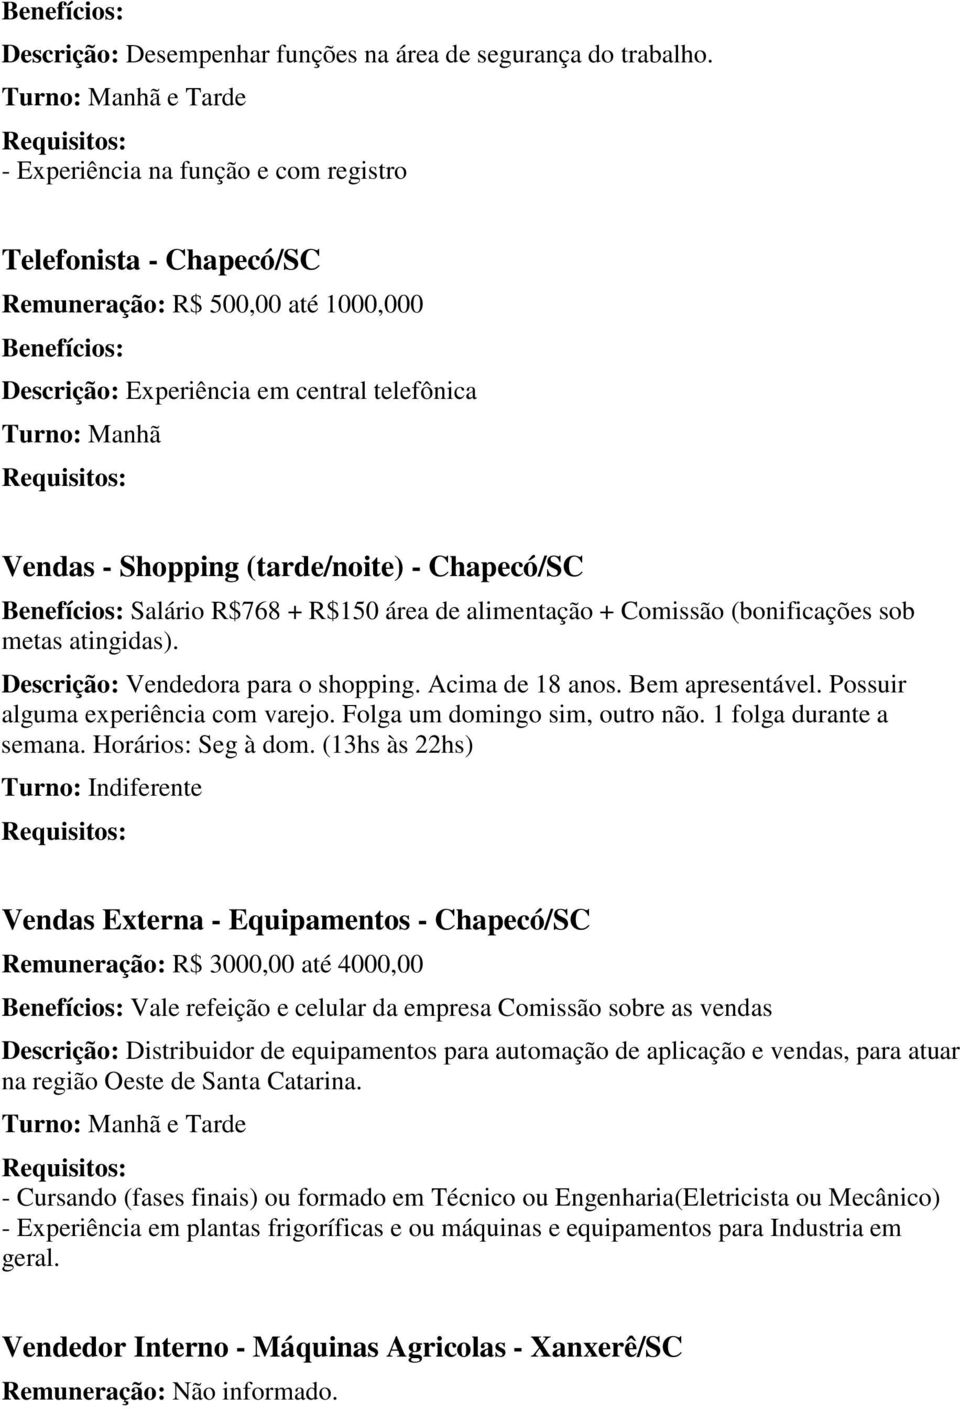 (tarde/noite) - Chapecó/SC Benefícios: Salário R$768 + R$150 área de alimentação + Comissão (bonificações sob metas atingidas). Descrição: Vendedora para o shopping. Acima de 18 anos.